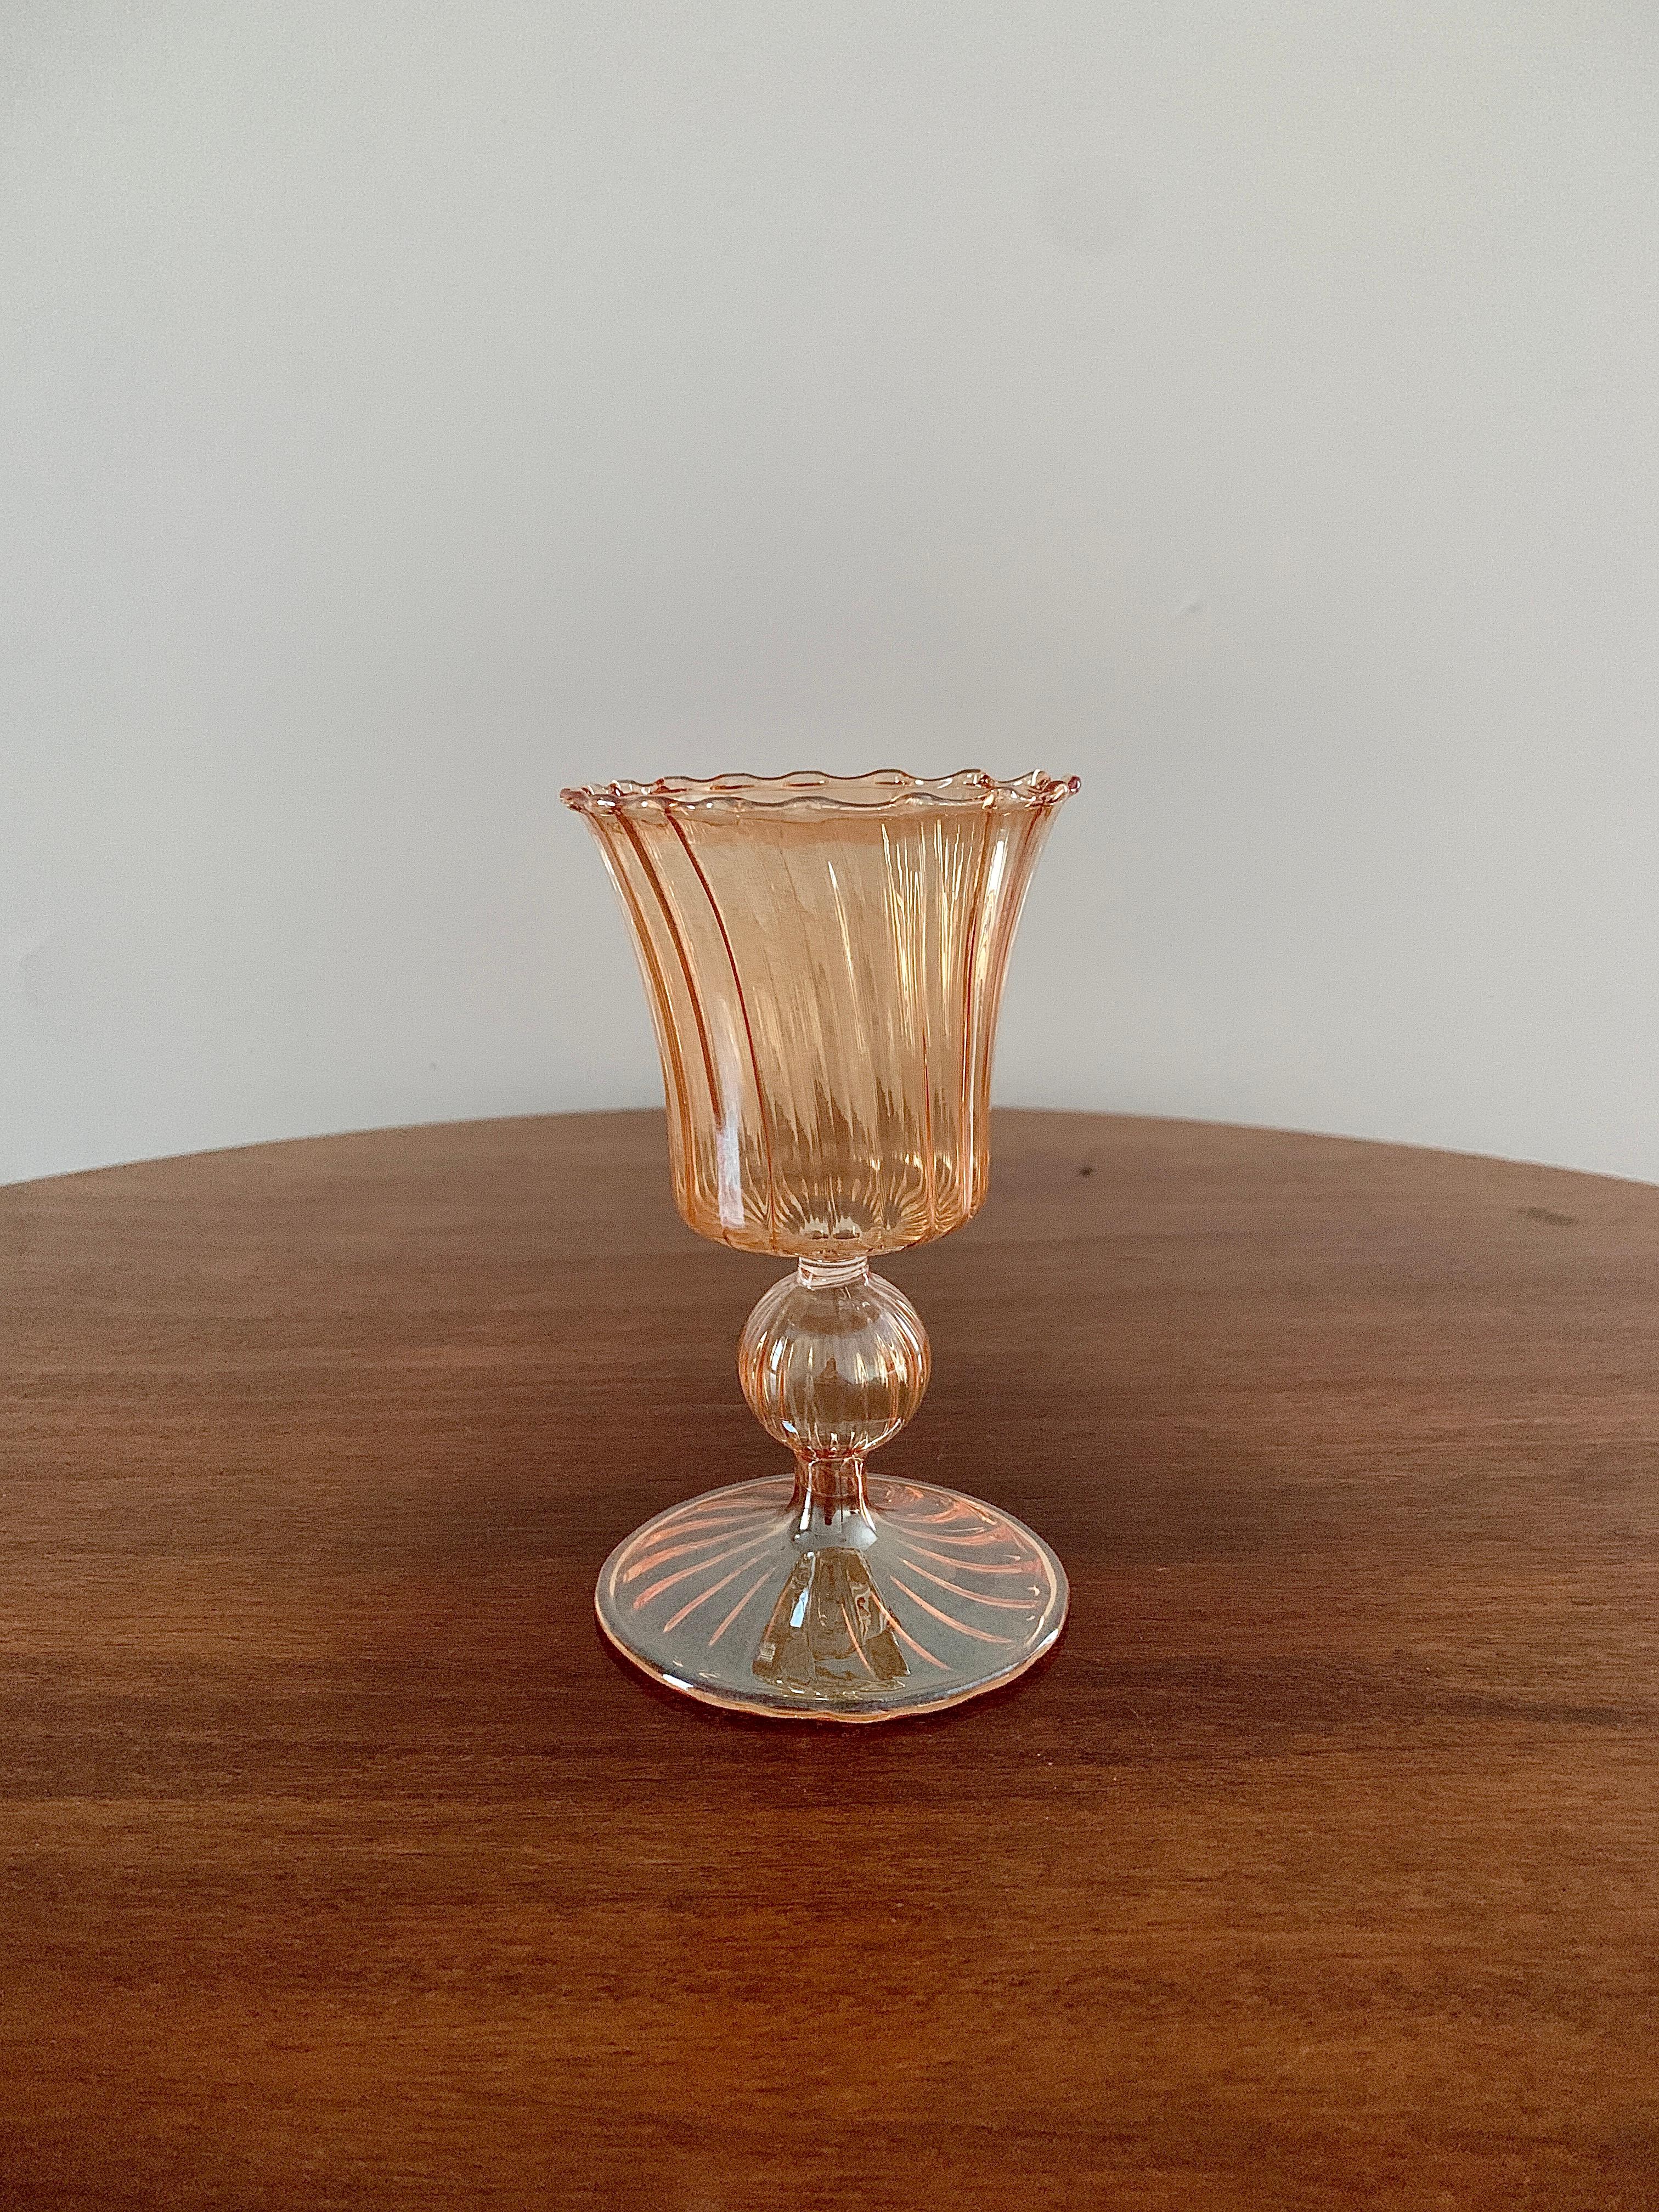 Ein atemberaubender pfirsichfarbener Kerzenhalter aus venezianischem Glas

Italien, Mitte des 20. Jahrhunderts

Maße: 3,13 